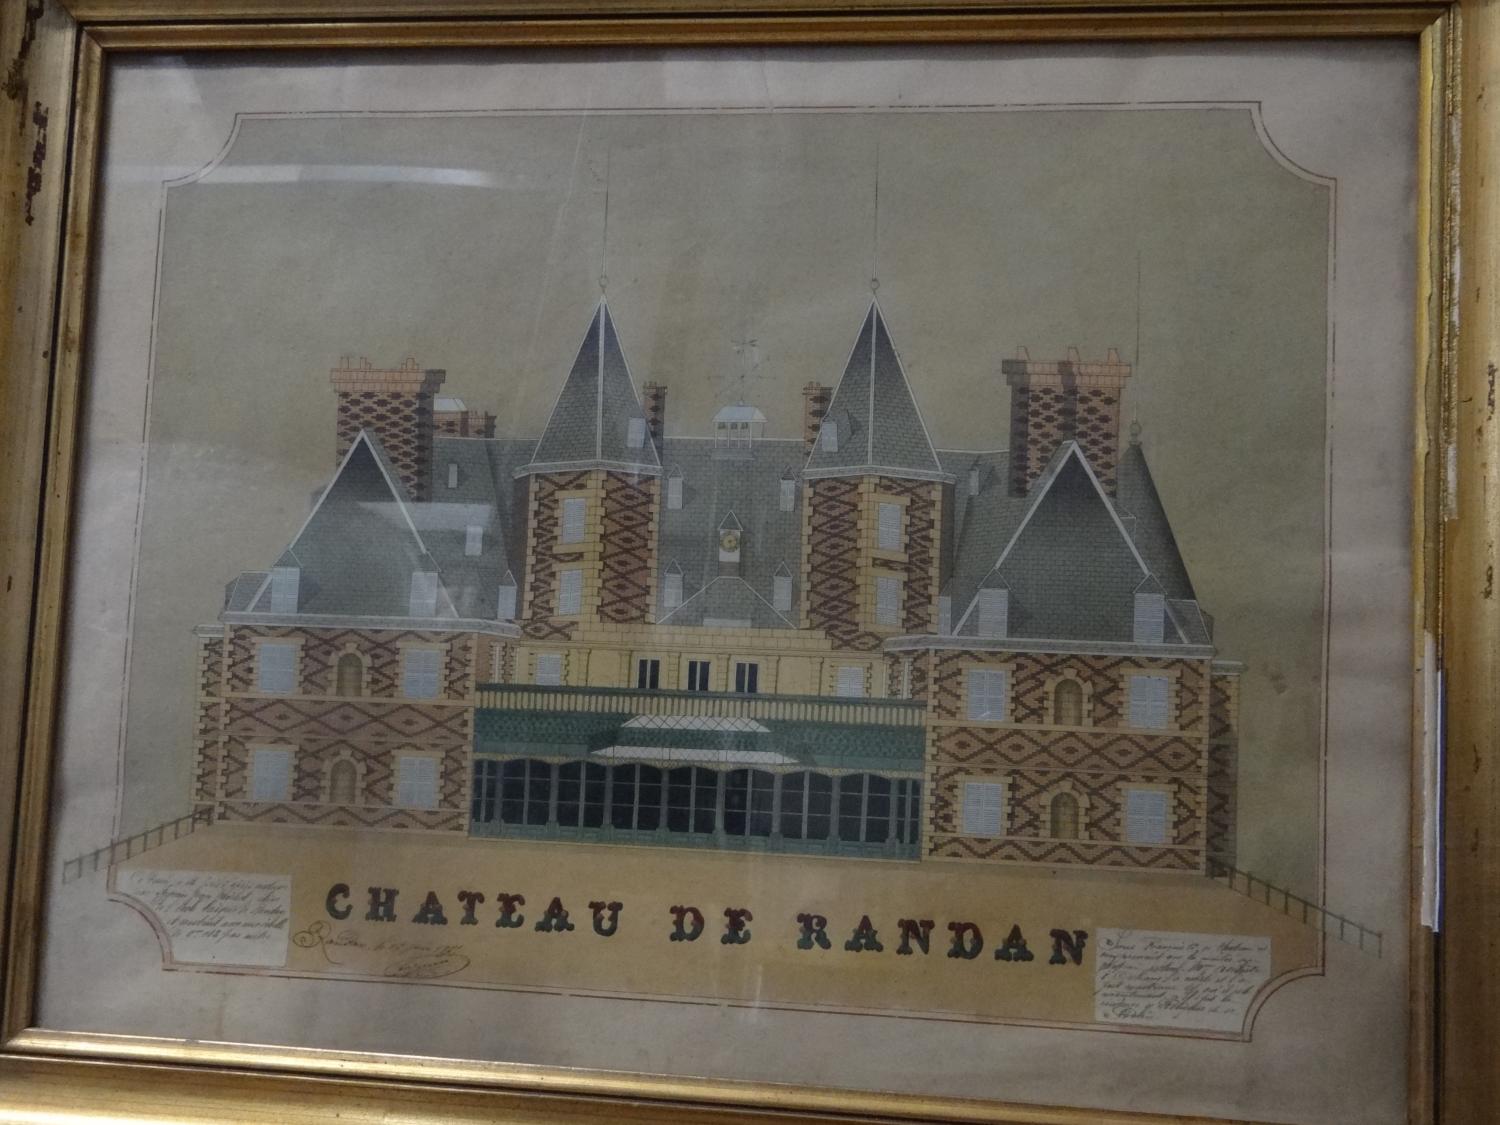 Dessin de Jean-Michel Seguin (1875) - " Château de Randan "